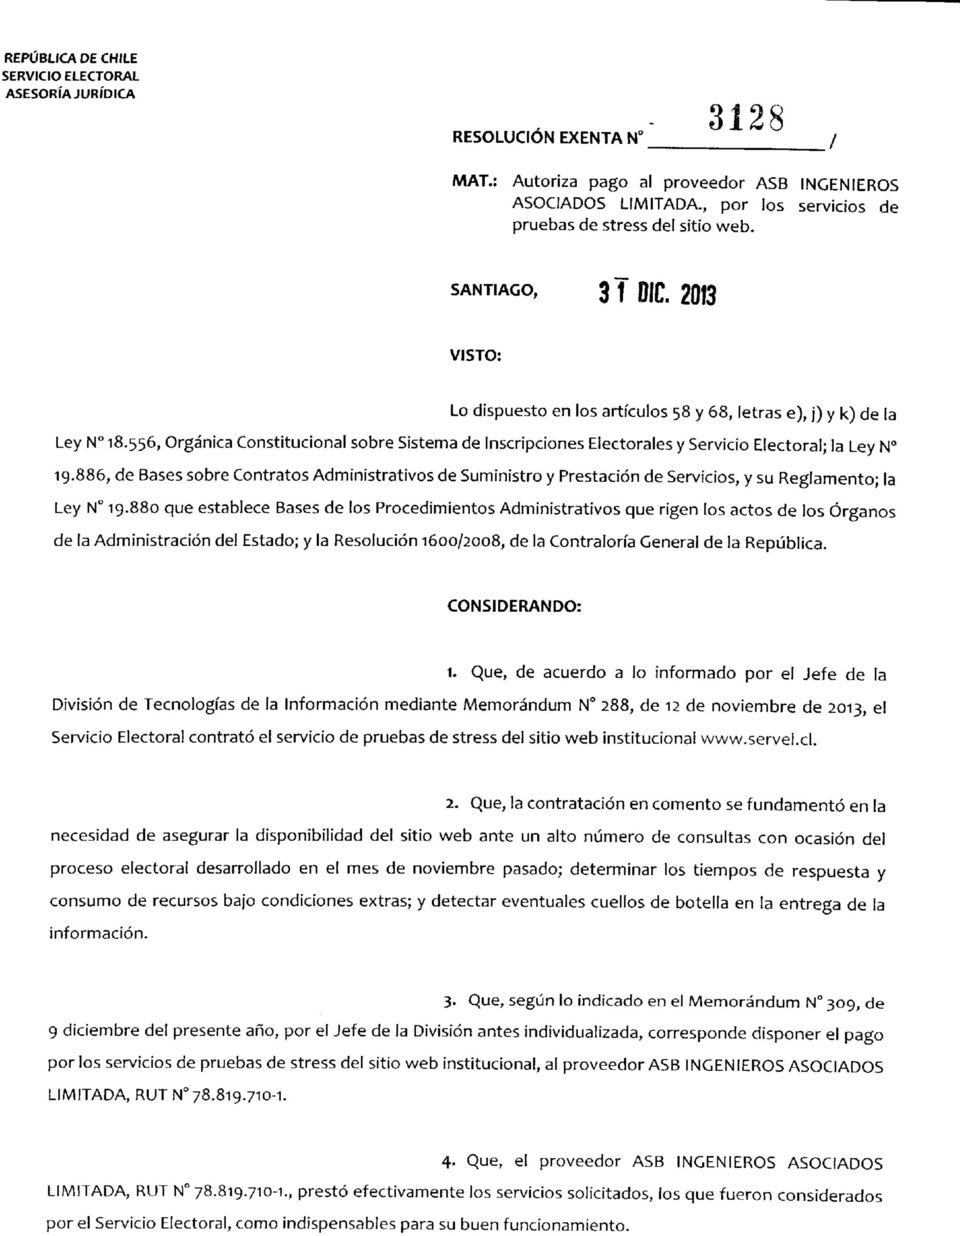 556, Orgánica Constitucional sobre Sistema de Inscripciones Electorales y Servicio Electoral; la Ley N 19.